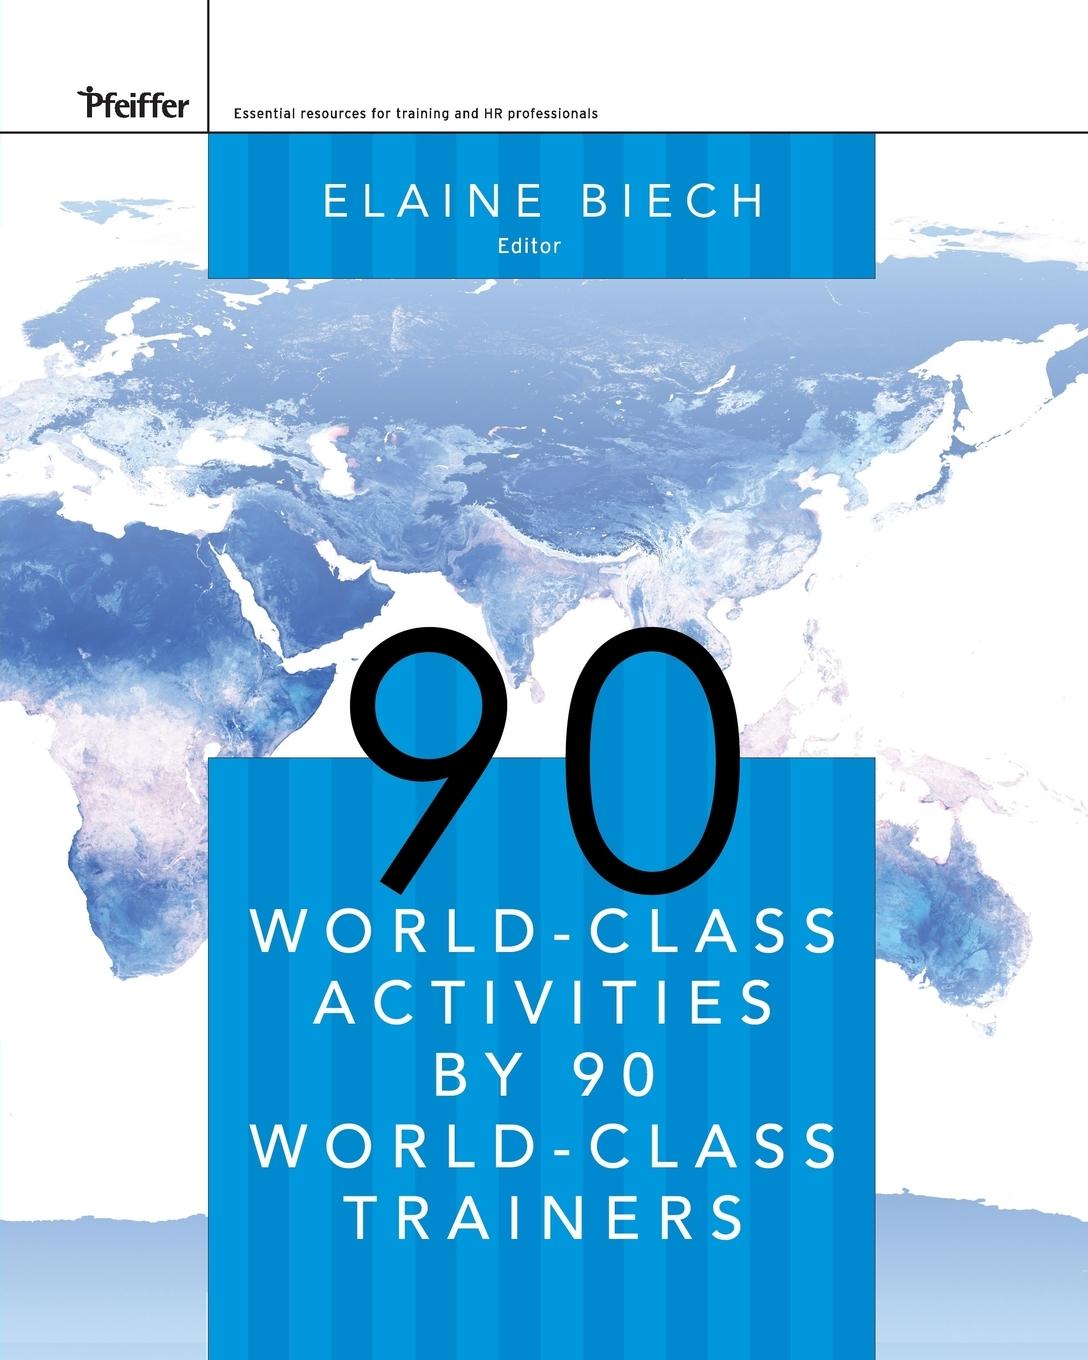 90 World-Class Activities by 90 World-Class Trainers - Biech, Elaine